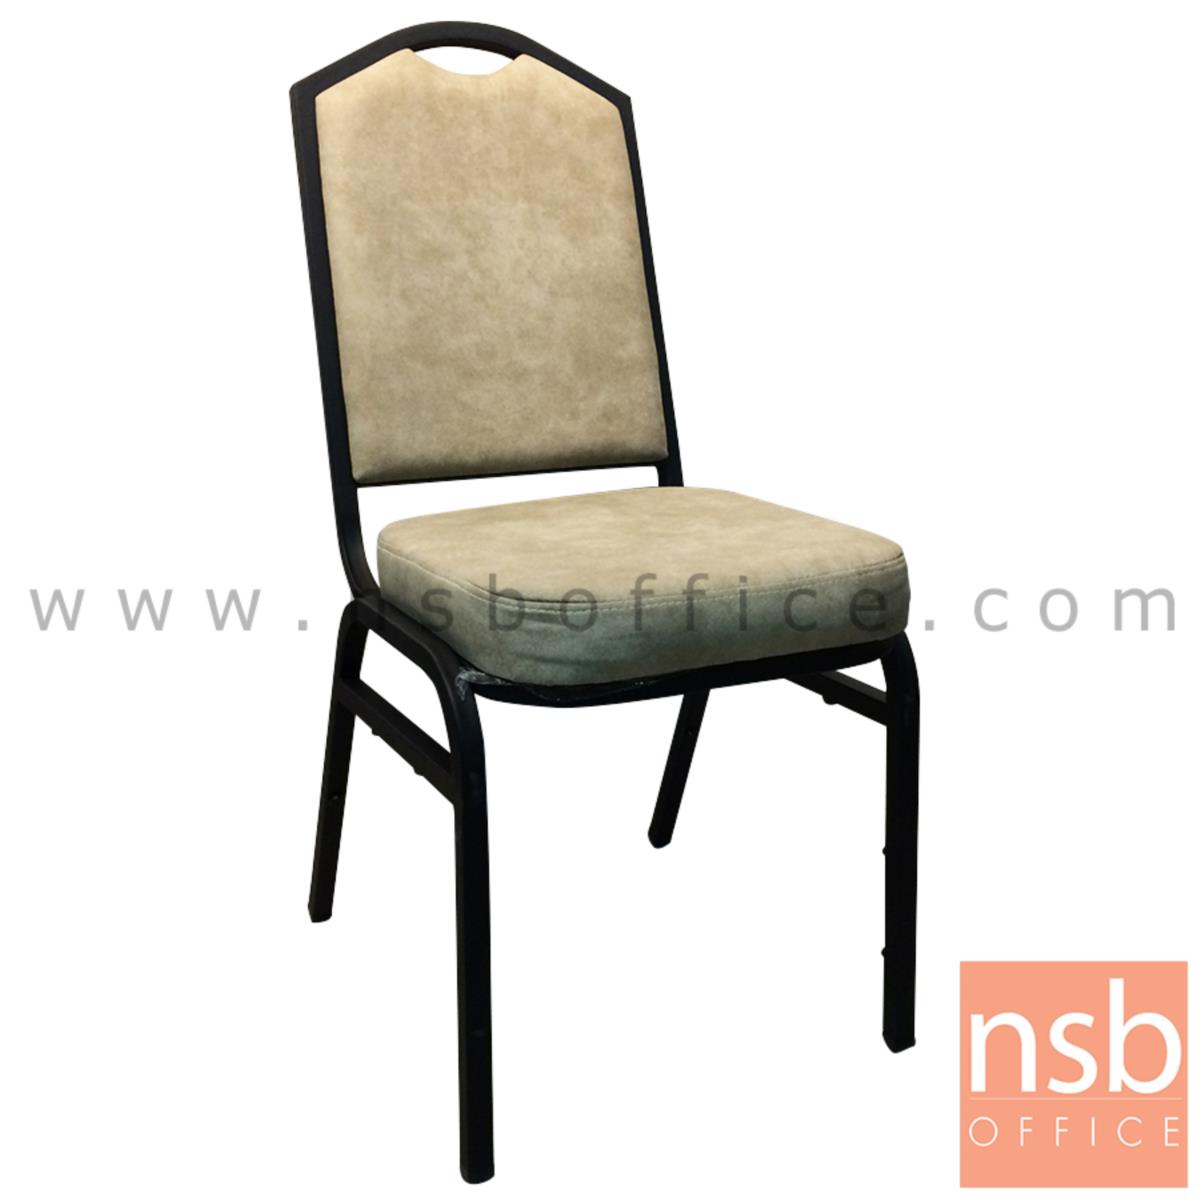 B05A140:เก้าอี้อเนกประสงค์จัดเลี้ยง  ขนาด 95H cm.  ขาเหล็กพ่นดำ